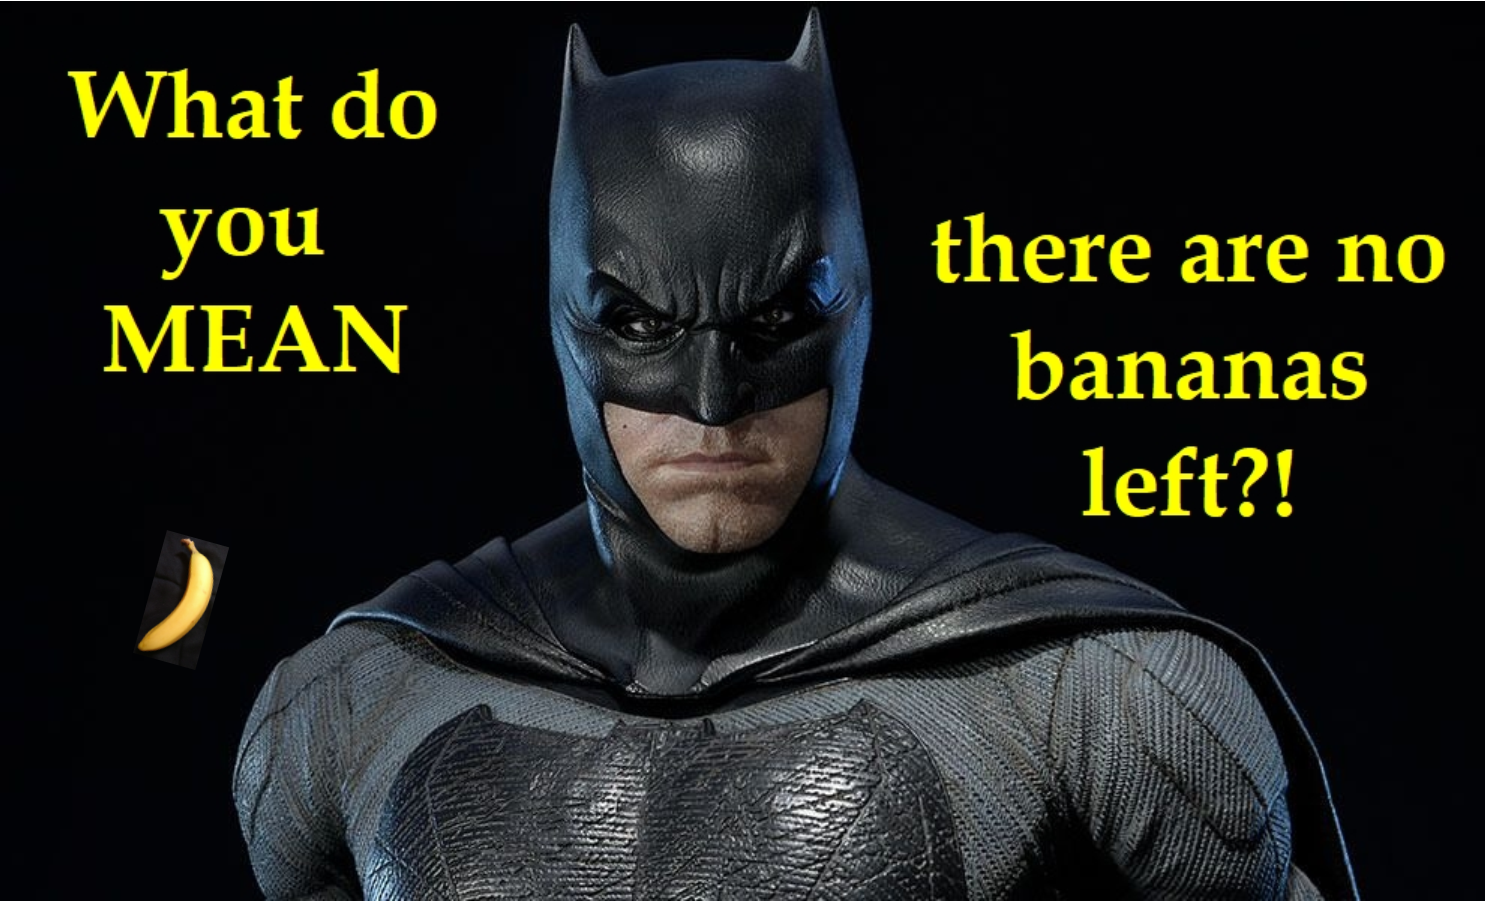 Batman banana meme2.png